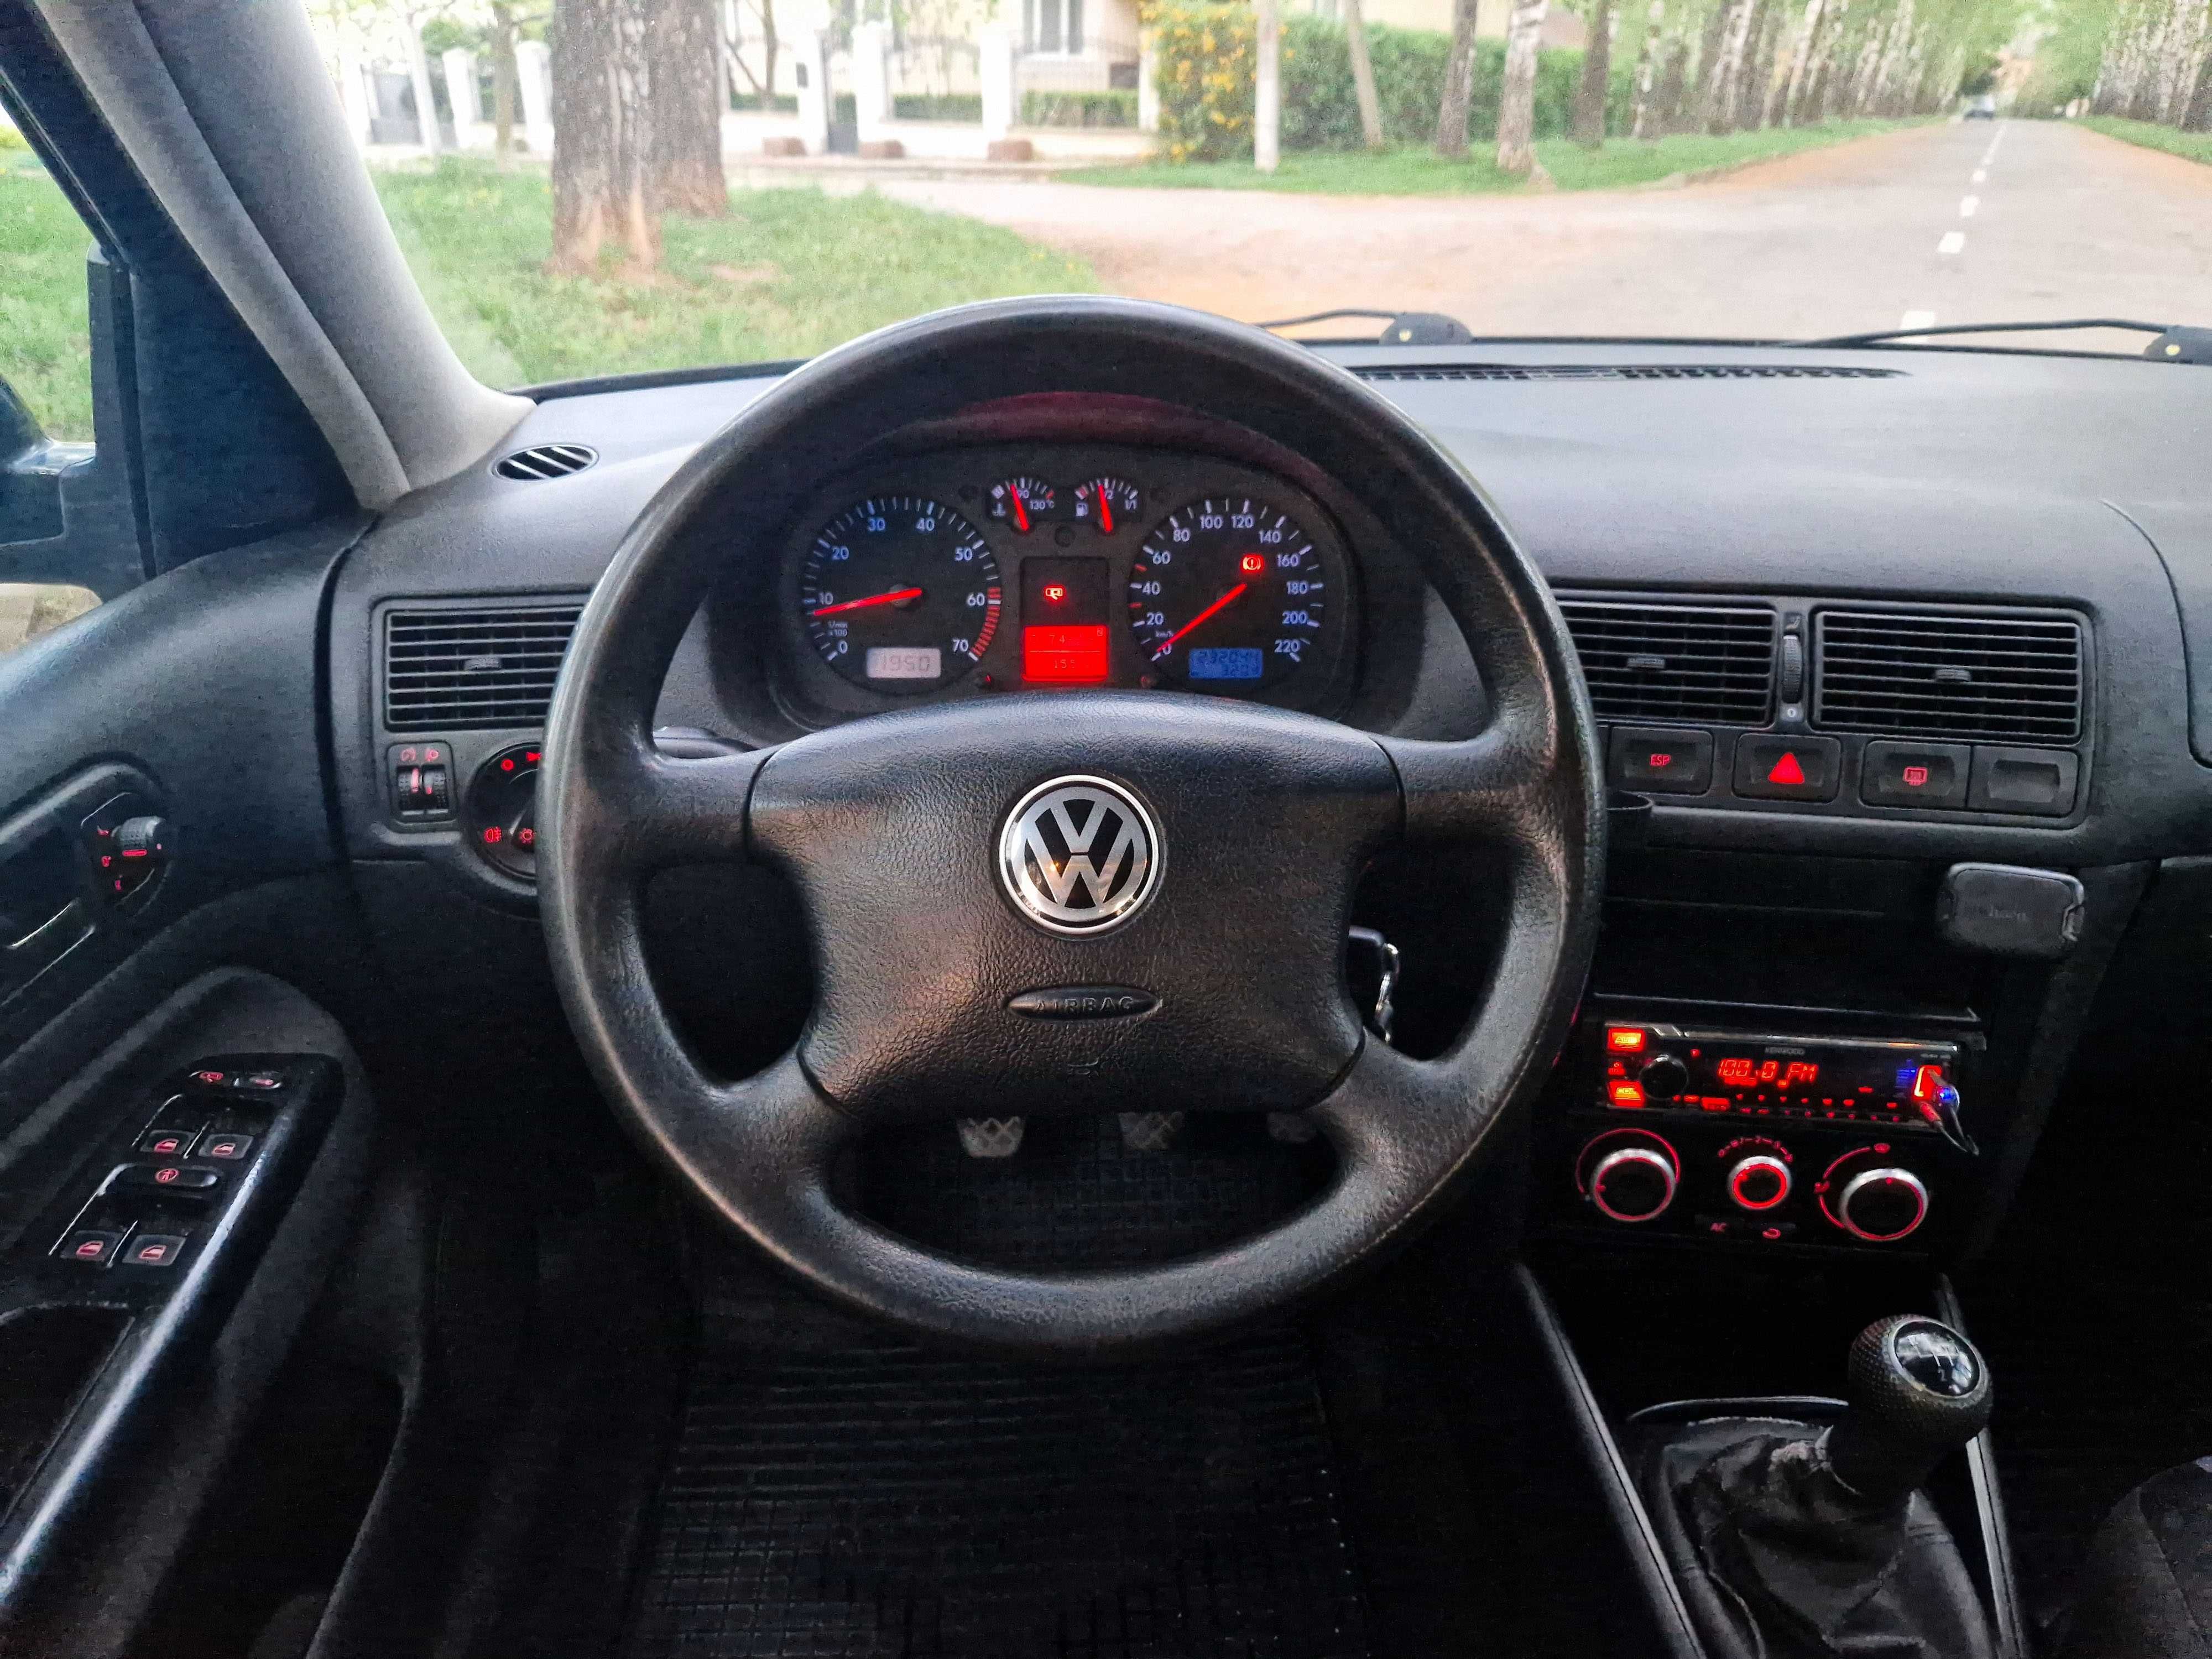 Volkswagen Golf IV 2002 р.в.